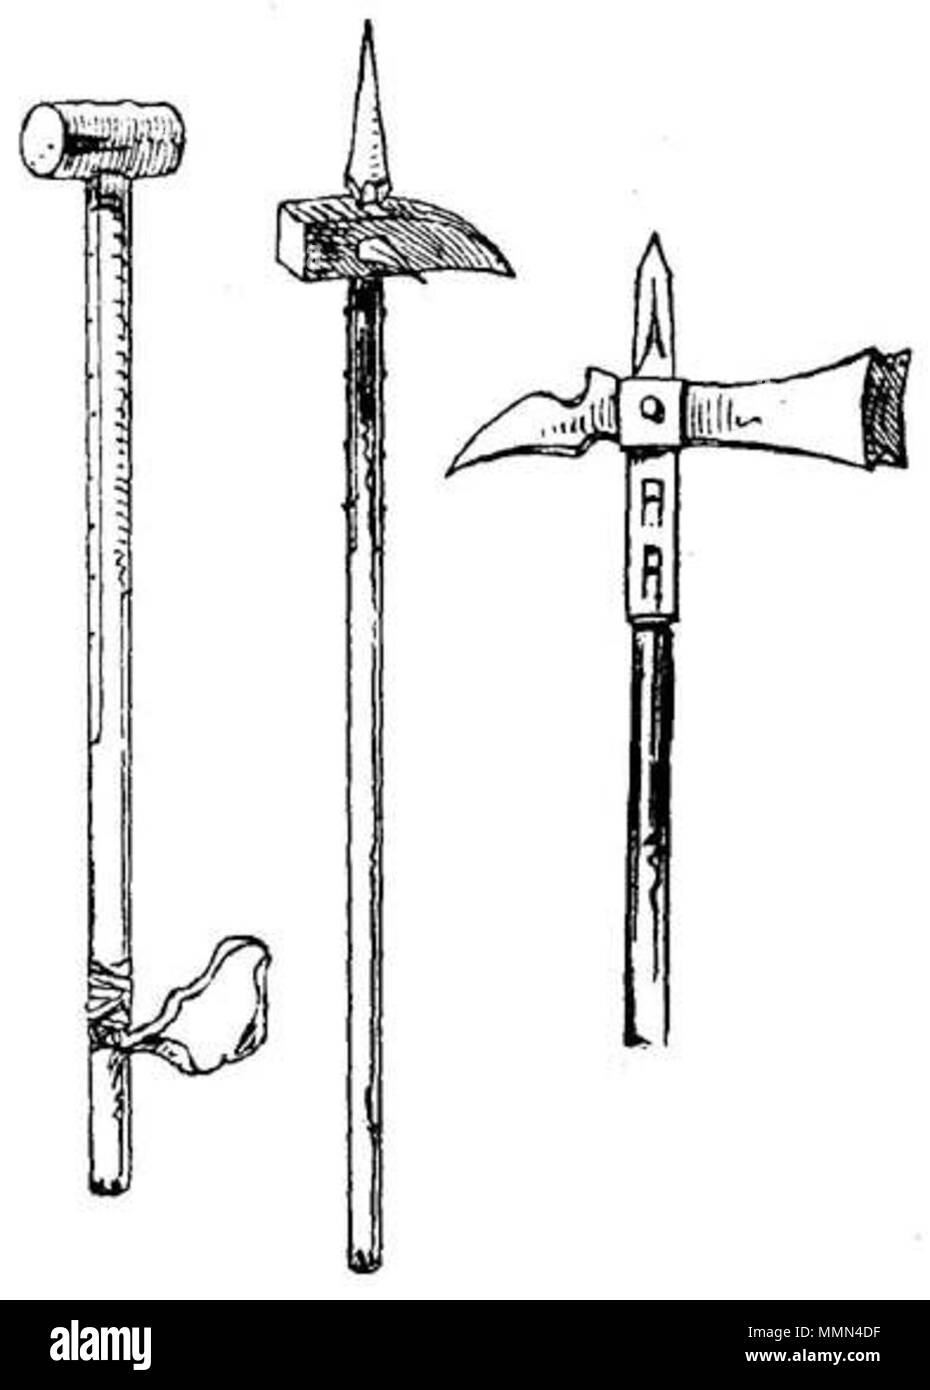 English: Luzerne Hammer (right) - illustration from a book 'Handbuch der  Waffenkunde' Das Waffenwesen in seiner historischen Entwicklung vom Beginn  des Mittelalters bis zum Ende des 18 Jahrhunderts' by Wendelin Boeheim,